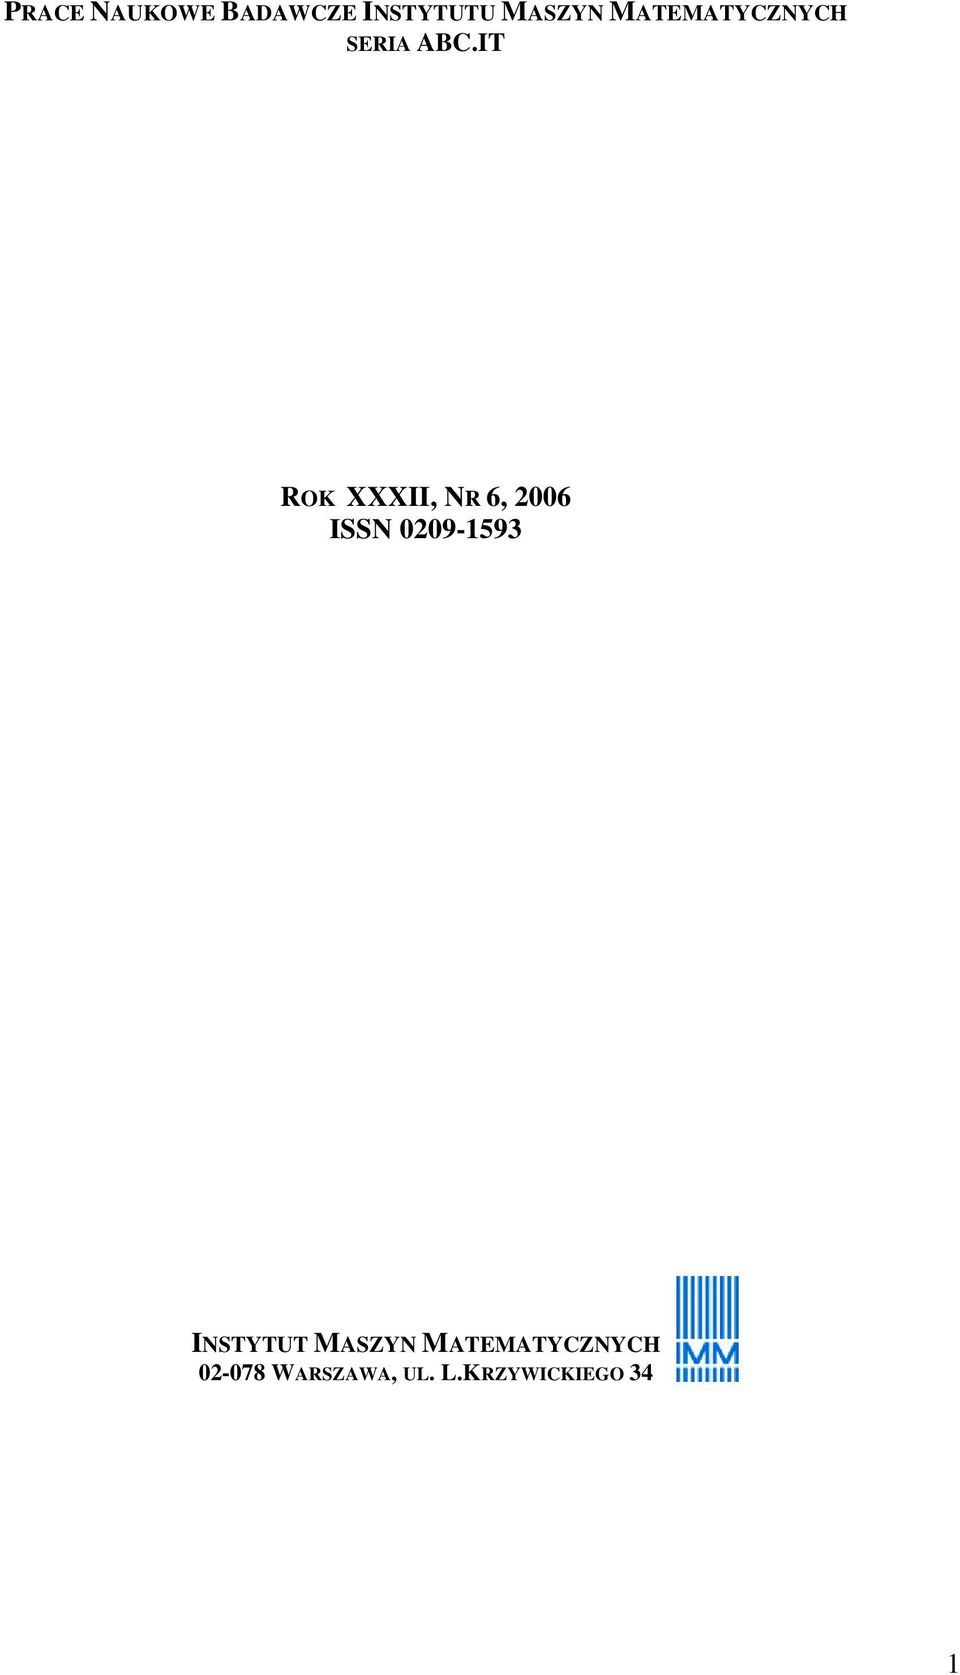 IT ROK XXXII, NR 6, 2006 ISSN 0209-1593